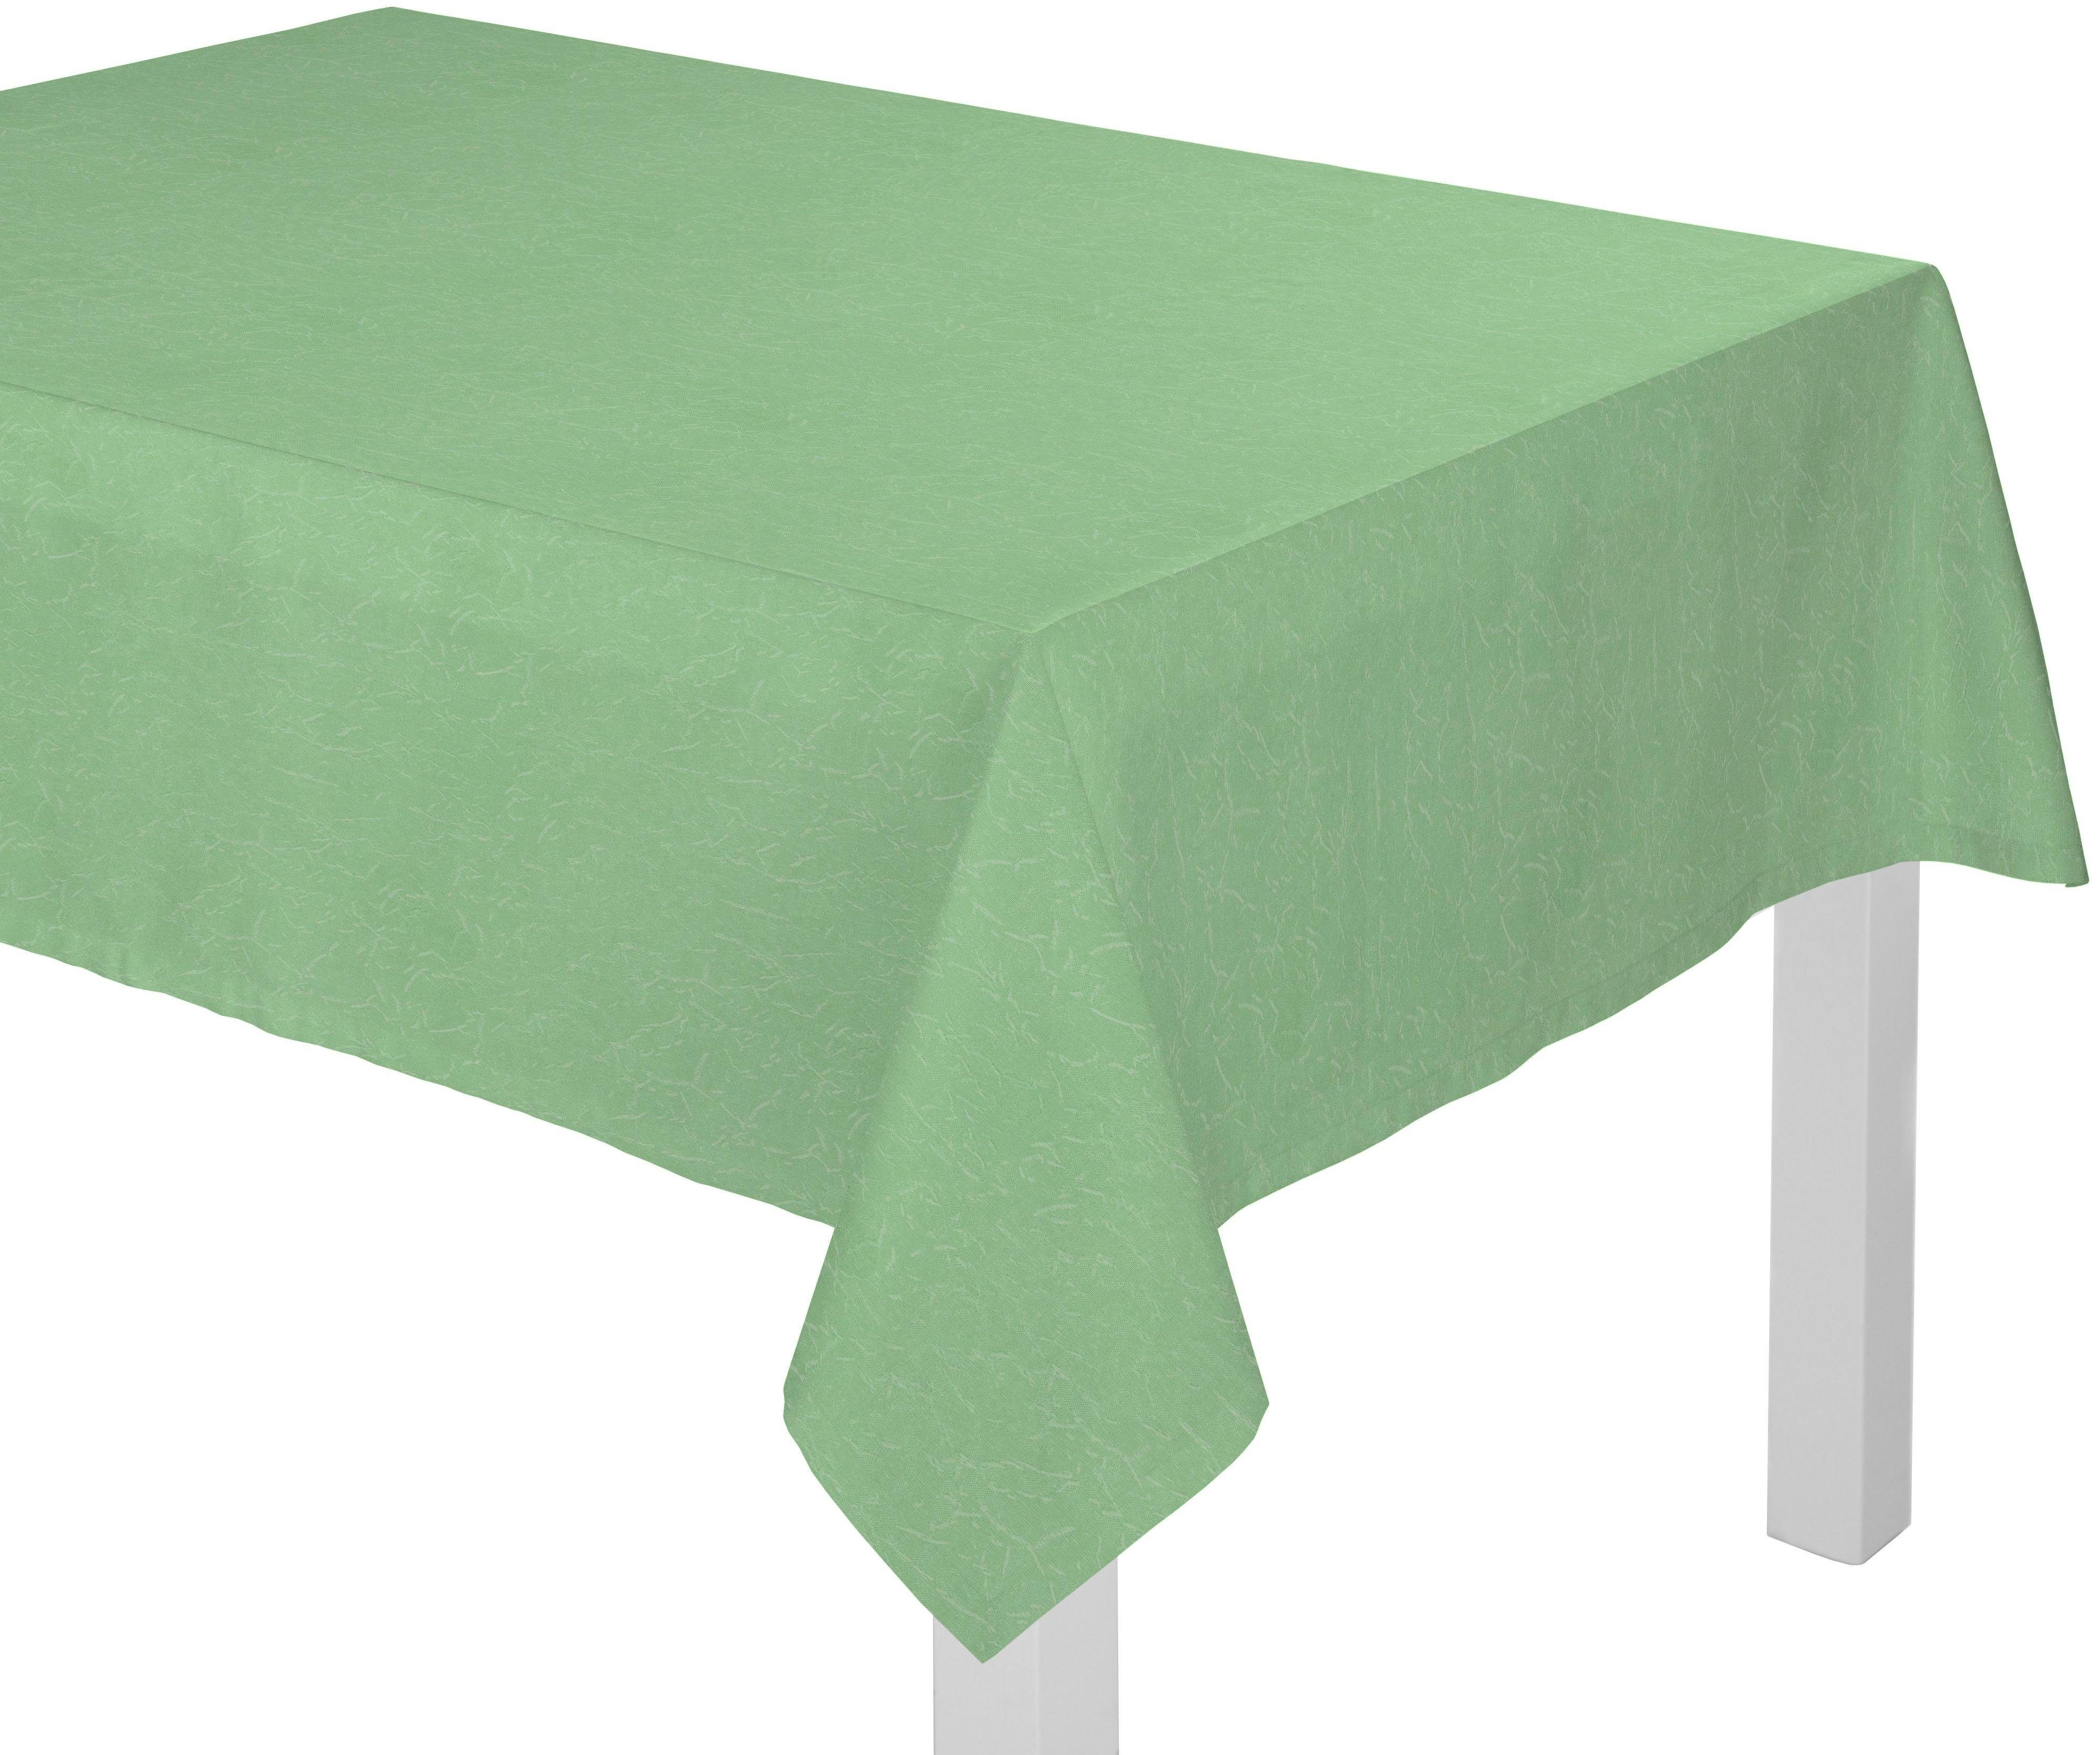 Wirth Tischdecke Lahnstein grün